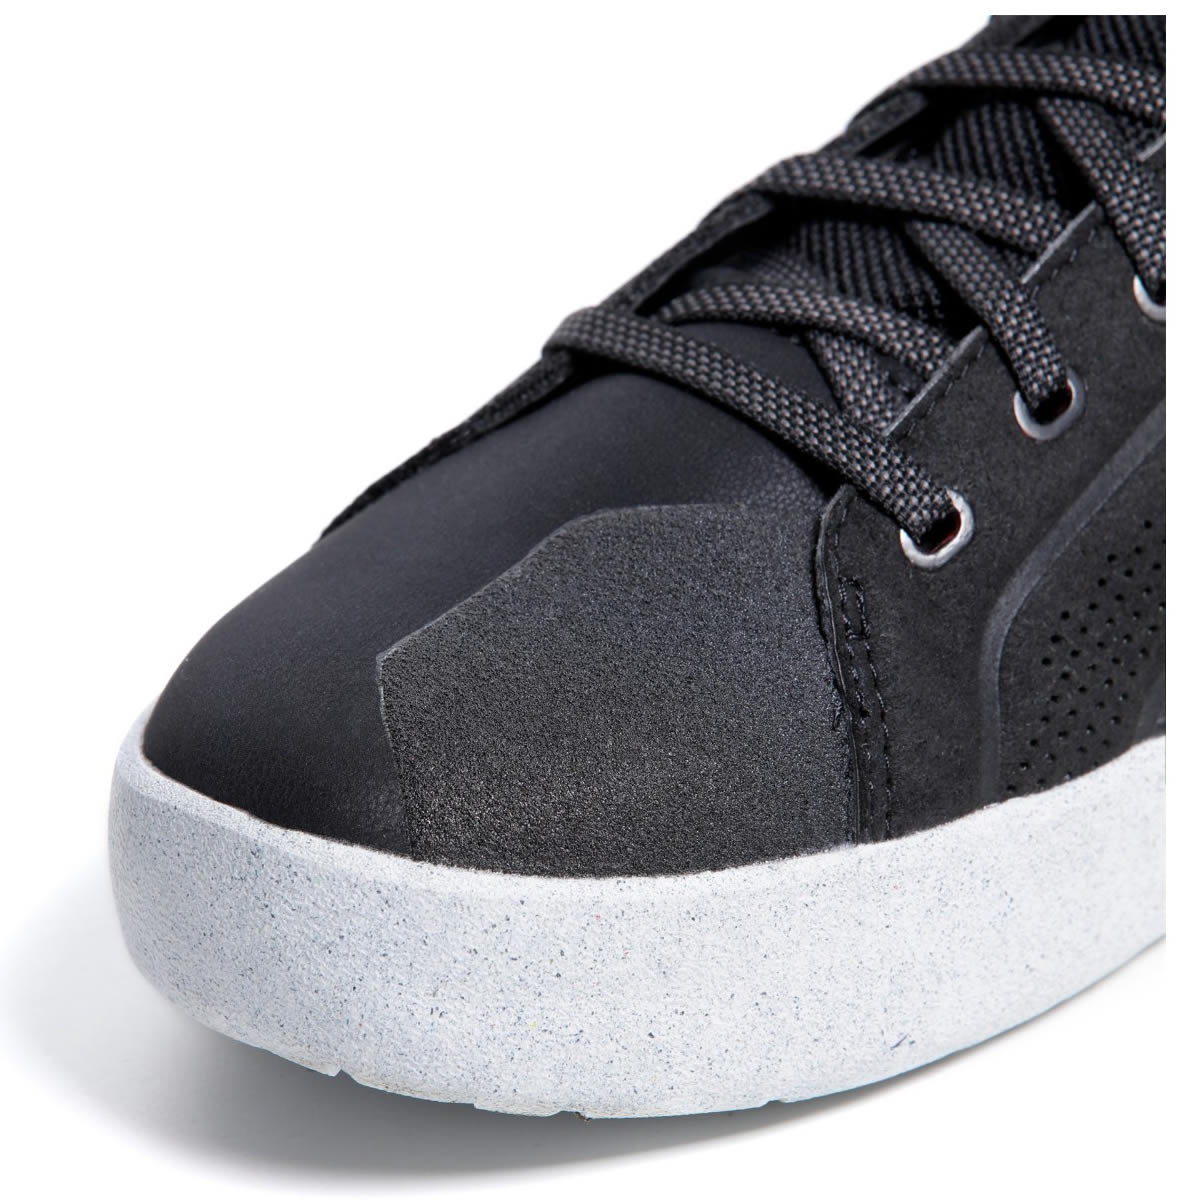 Dainese Schuhe Metractive Air, schwarz-weiß